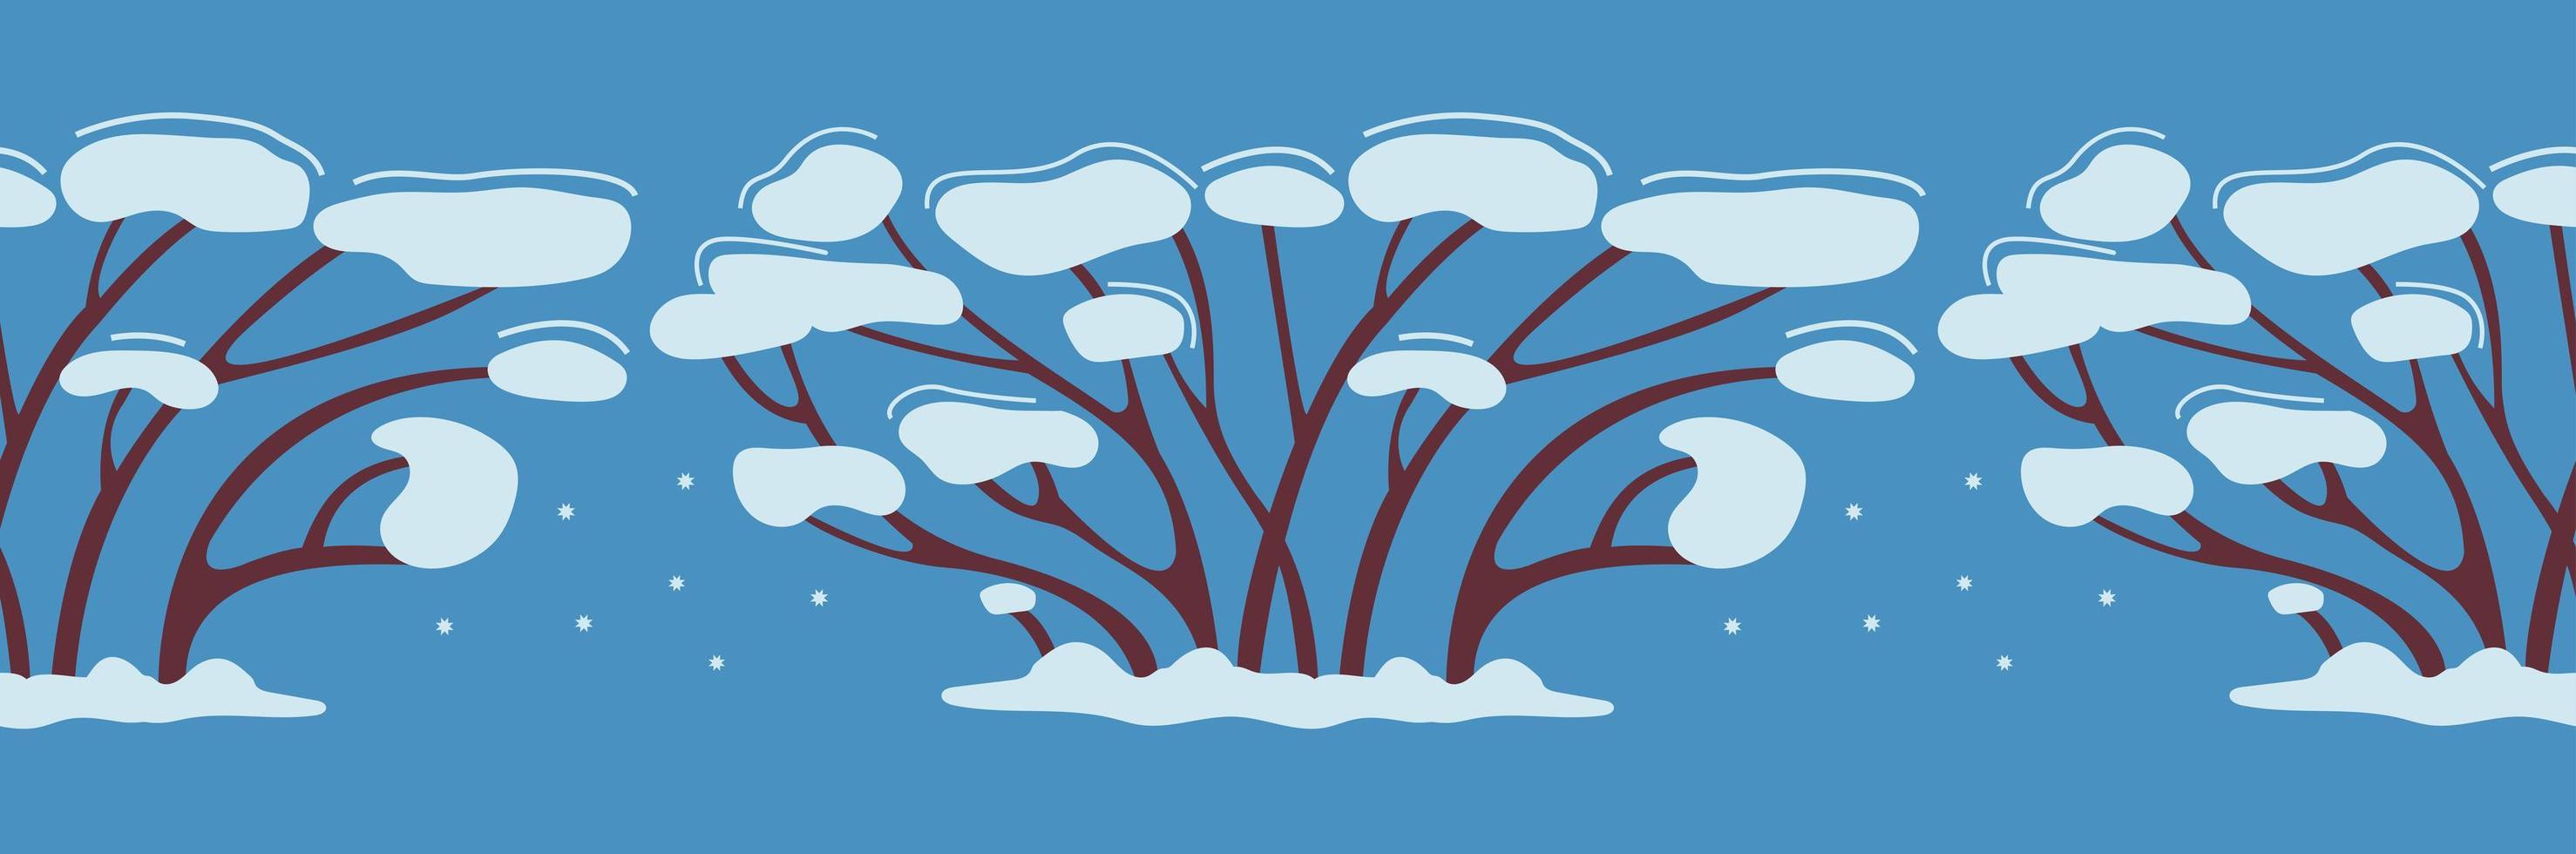 árvore de inverno padrão sem emenda ou arbusto na neve. cresce no inverno. decoração para design de ano novo. desenho de fita adesiva. ilustração vetorial simples em estilo plano sobre fundo azul vetor